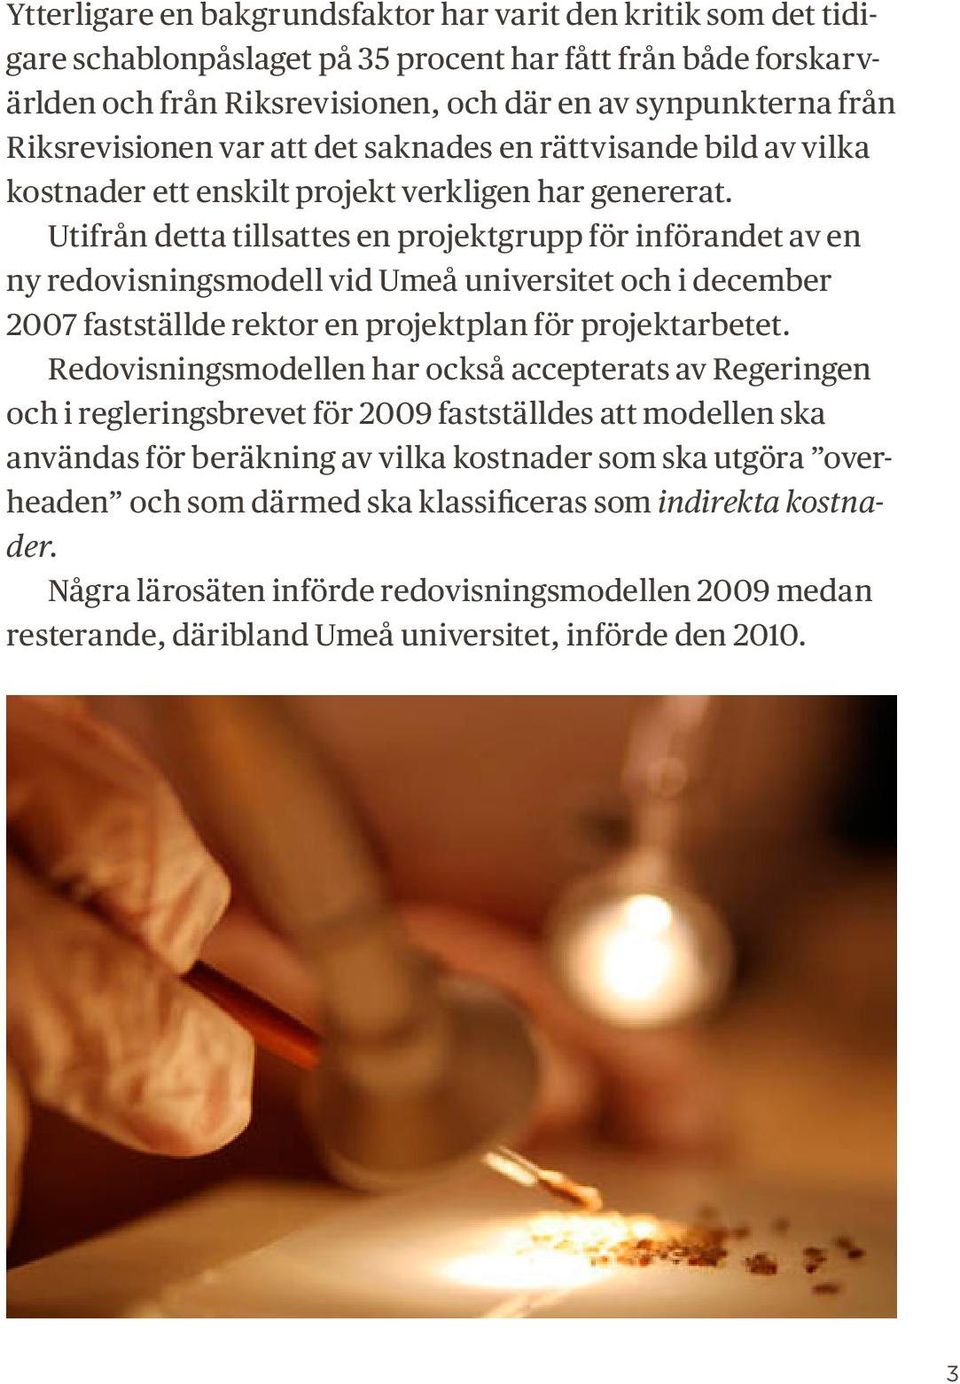 Utifrån detta tillsattes en projektgrupp för införandet av en ny redovisningsmodell vid Umeå universitet och i december 2007 fastställde rektor en projektplan för projektarbetet.